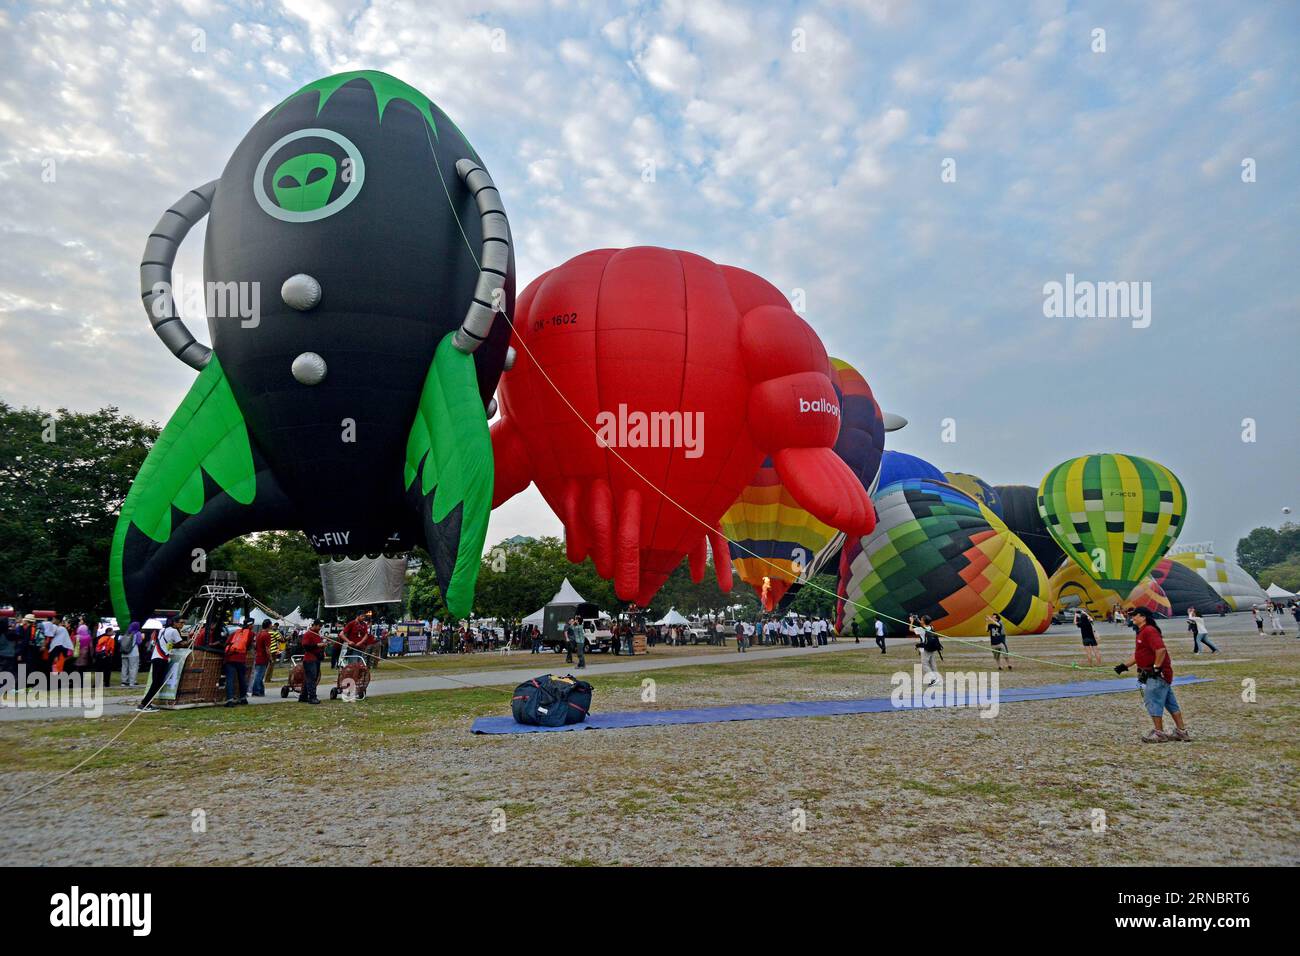 (160311) -- PUTRAJAYA (MALESIA), 11 marzo 2016 -- le mongolfiere sono gonfiate durante l'8a Putrajaya International Hot Air Balloon Fiesta a Putrajaya, Malesia, 11 marzo 2016. La festa di tre giorni in mongolfiera ha aperto qui il venerdì con la partecipazione di circa 20 mongolfiere. MALESIA-PUTRAJAYA-FESTIVAL-MONGOLFIERE ChongxVoonxChung PUBLICATIONxNOTxINxCHN Putrajaya Malesia 11 marzo 2016 le mongolfiere sono gonfiate durante l'8a Putrajaya International Hot Air Balloon Fiesta a Putrajaya Malesia 11 marzo 2016 la festa di tre giorni in mongolfiera è stata aperta qui IL venerdì Wi Foto Stock